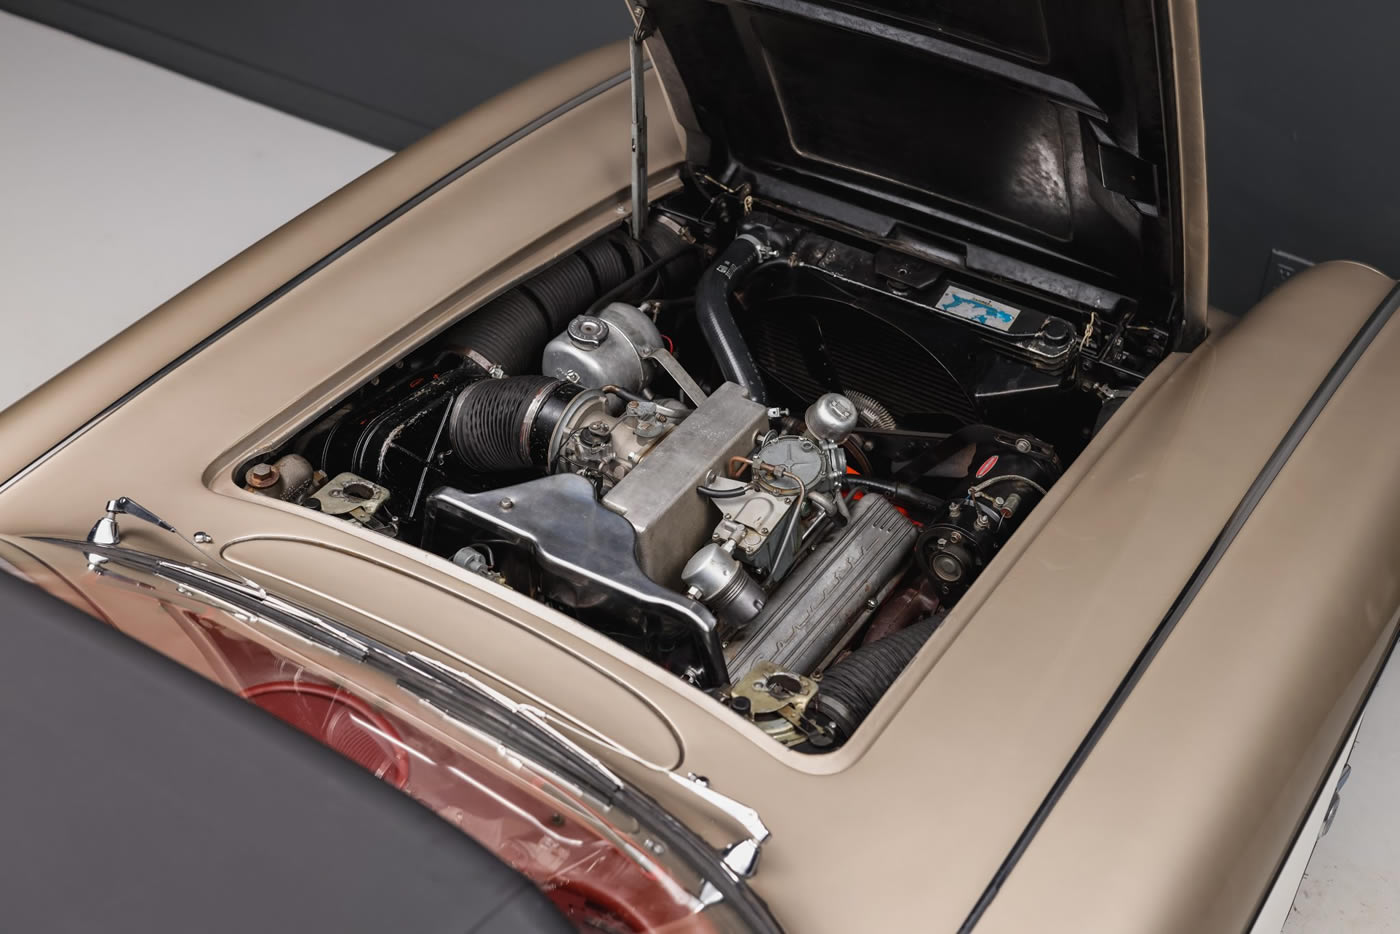 1961 Corvette 283/315 Fuelie 4-Speed in Fawn Beige